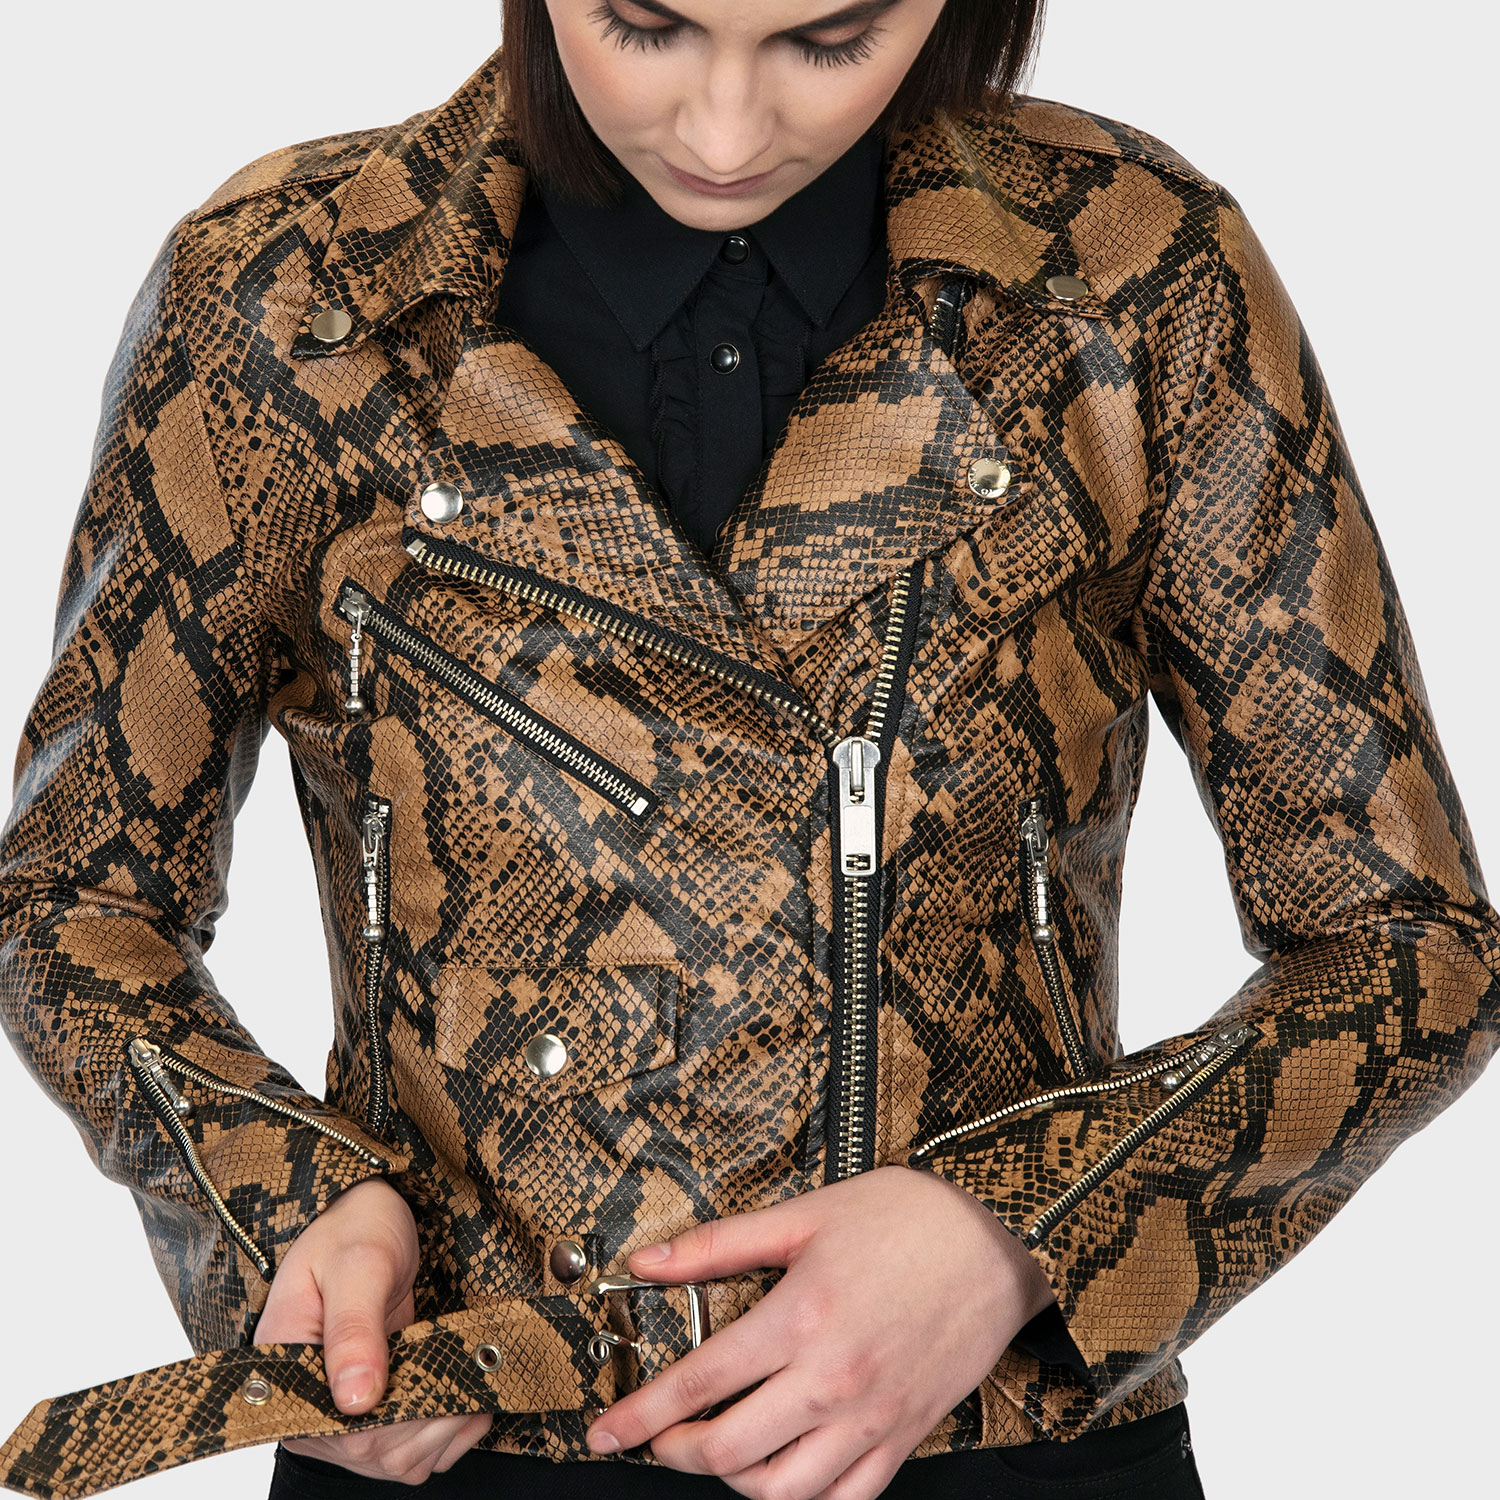 Women's Faux Leather Snakeskin Print Moto Jacket